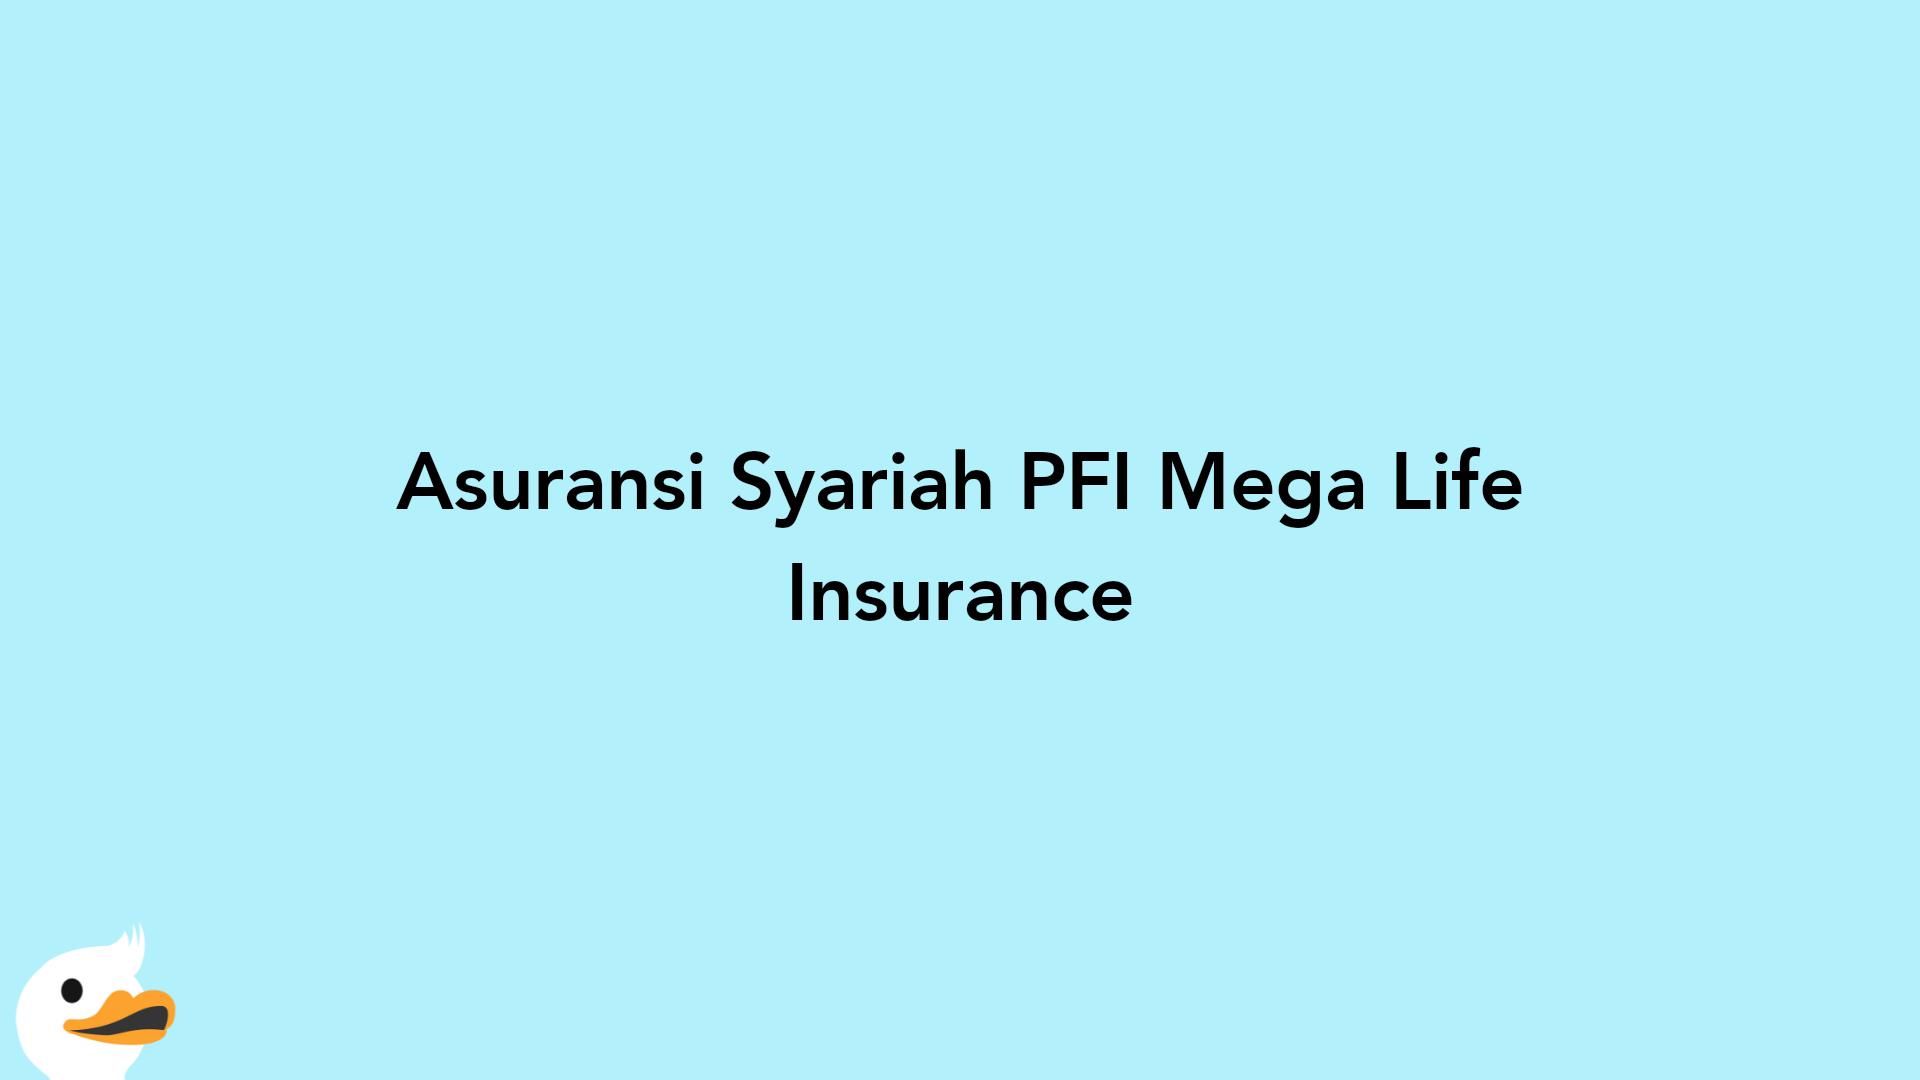 Asuransi Syariah PFI Mega Life Insurance